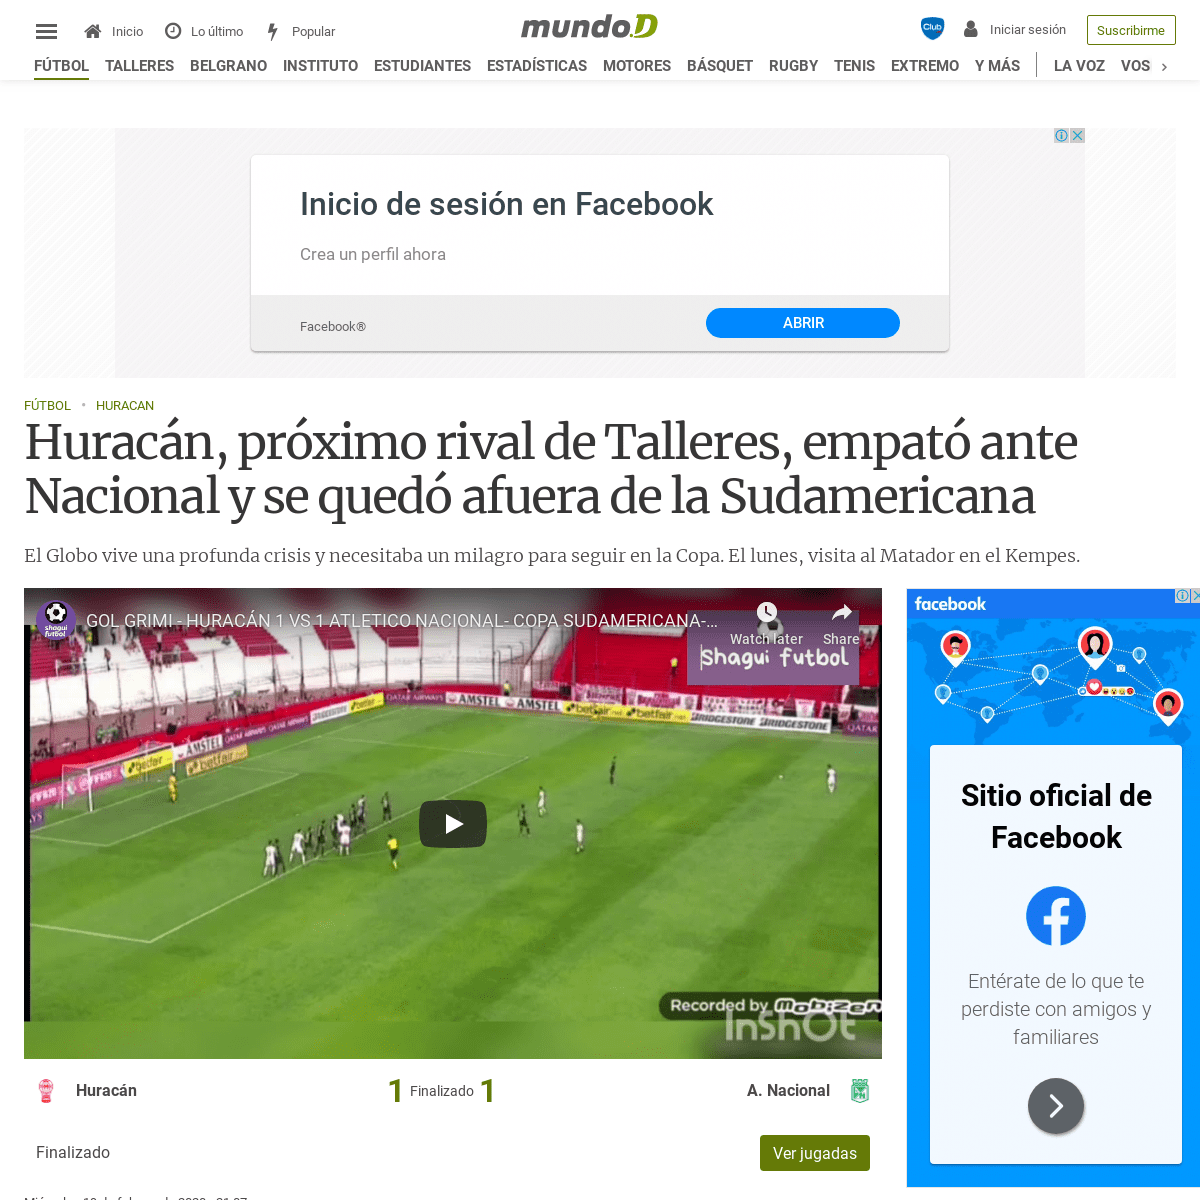 A complete backup of mundod.lavoz.com.ar/futbol/huracan-vs-atletico-nacional-de-colombia-por-copa-sudamericana-hora-tv-y-formaci